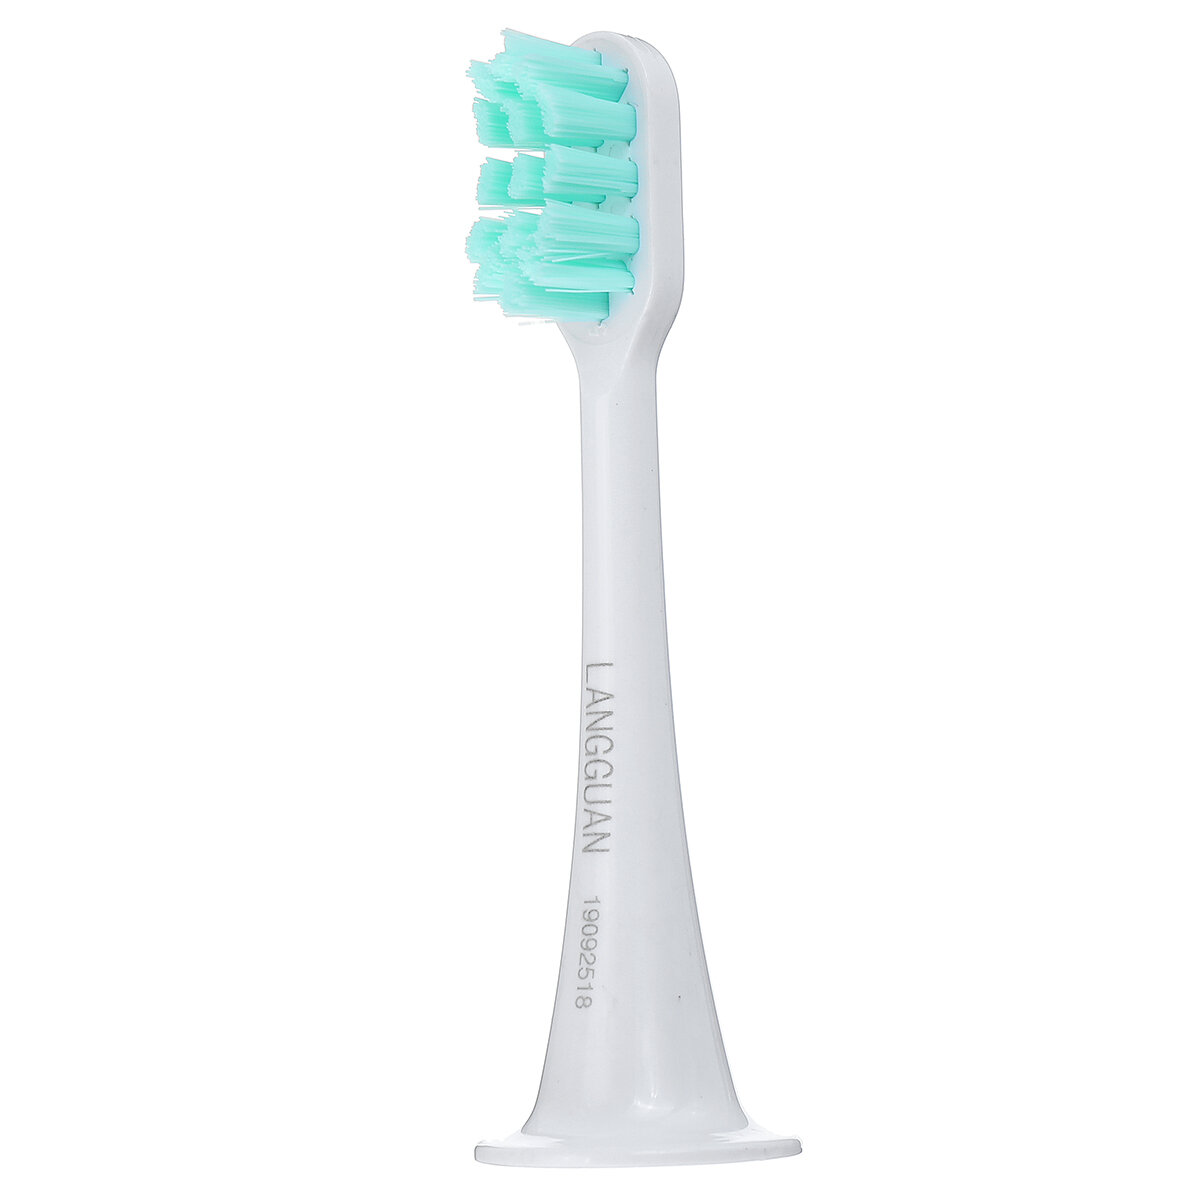 Opzetborstel voor orale tandenborstel vervangen voor elektrische tandenborstel uit de serie